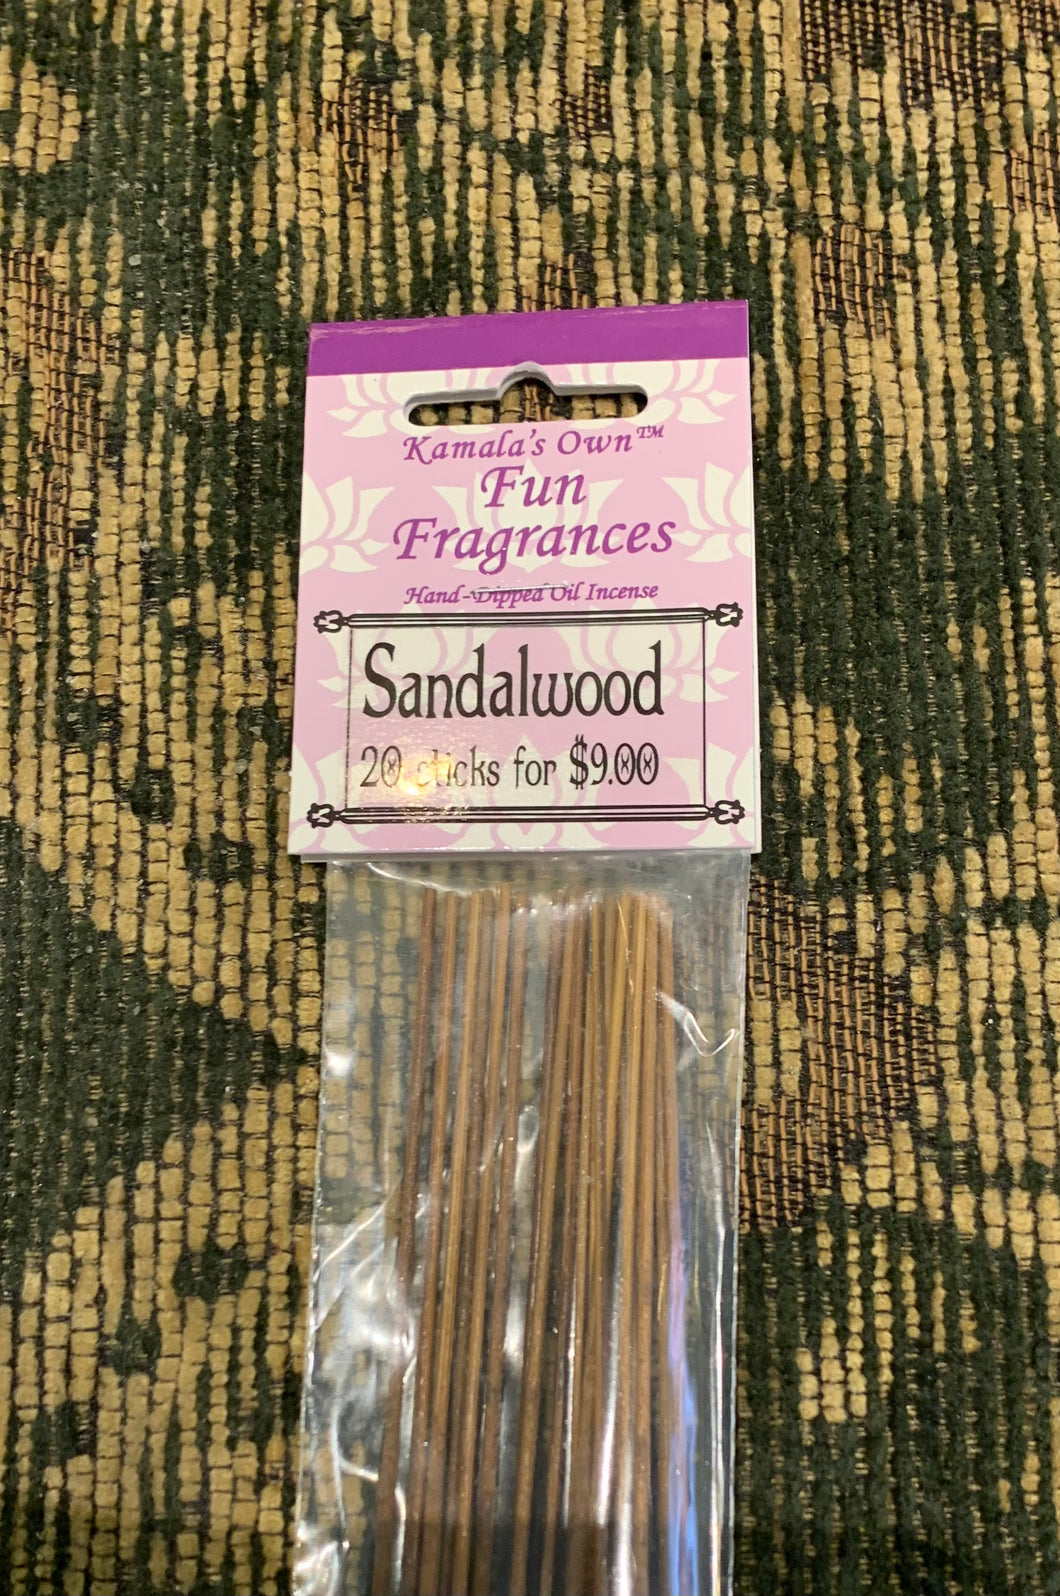 Sandalwood incense sticks